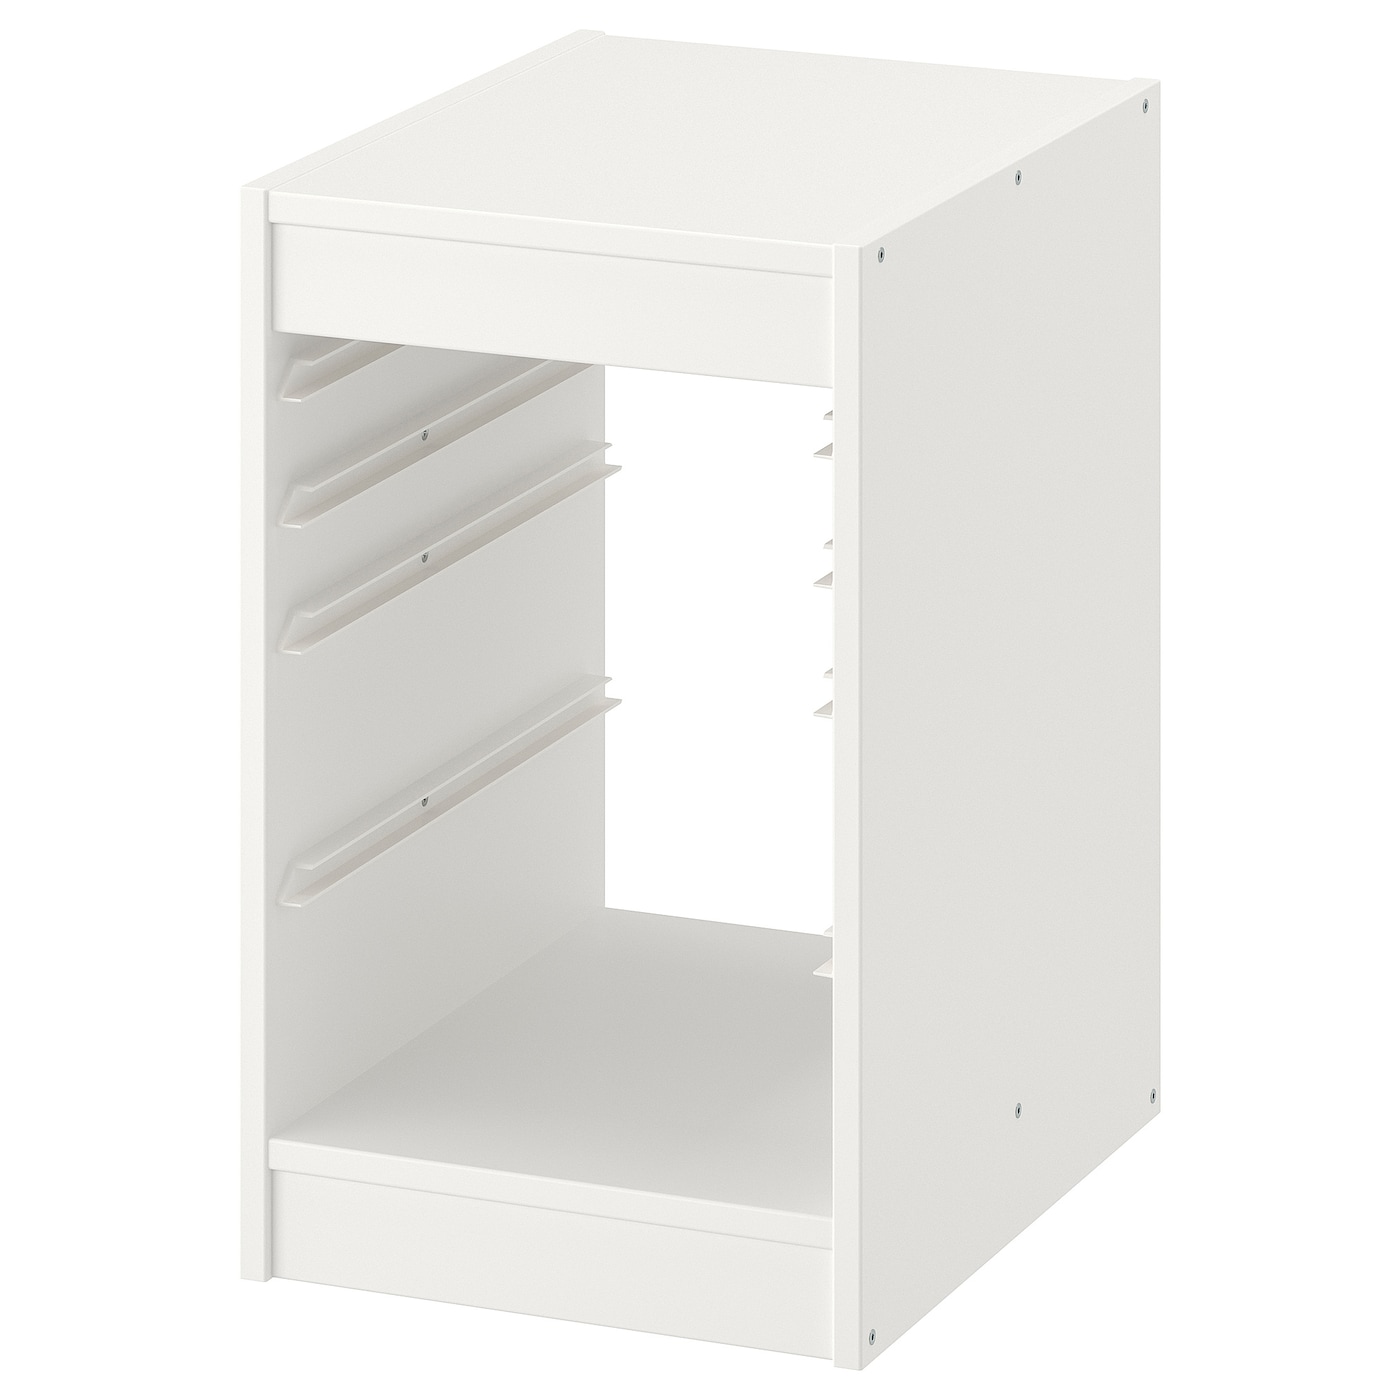 Каркас стеллажа - IKEA TROFAST, 34х44х56 см, белый, ТРУФАСТ ИКЕА